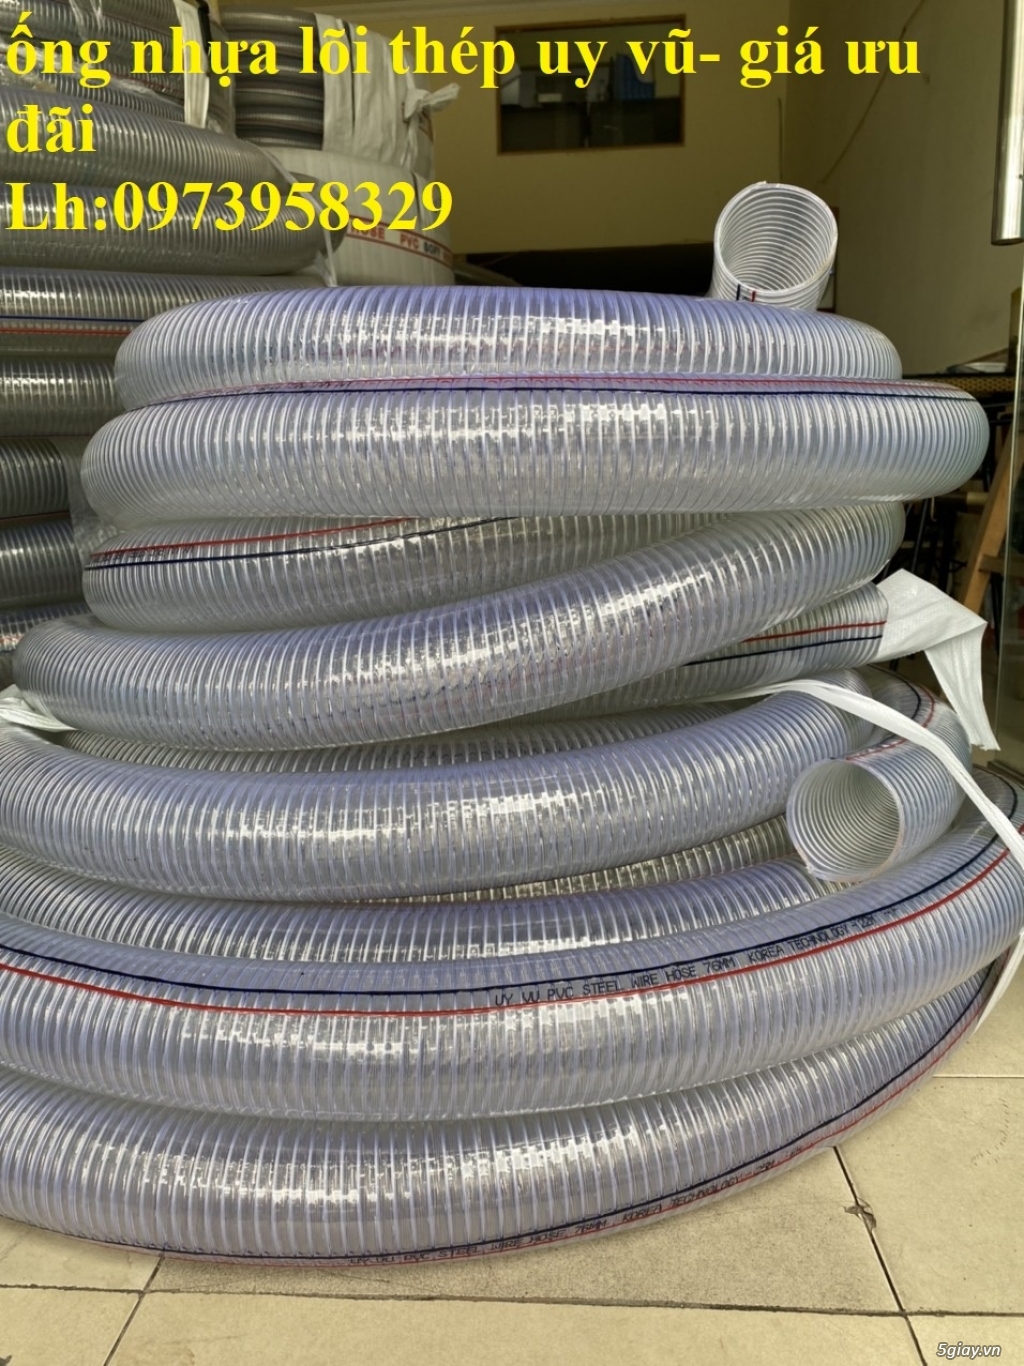 Tìm kiếm đại lý phân phối ống nhựa lõi thép giá ưu đãi phi 42- phi 50 - 16